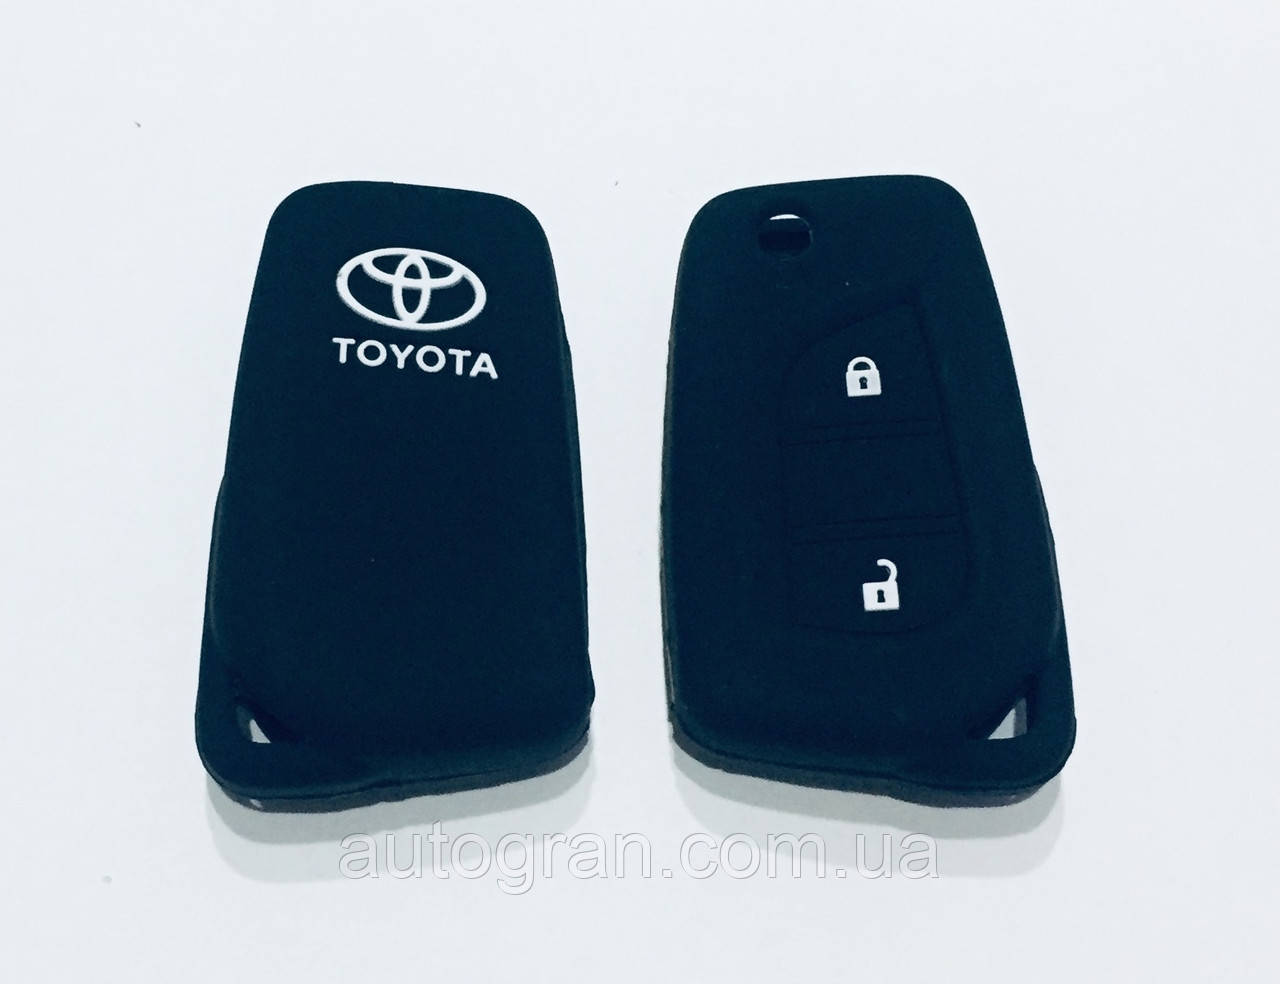 Силіконовий чохол на викидний ключ Toyota 2 кнопки